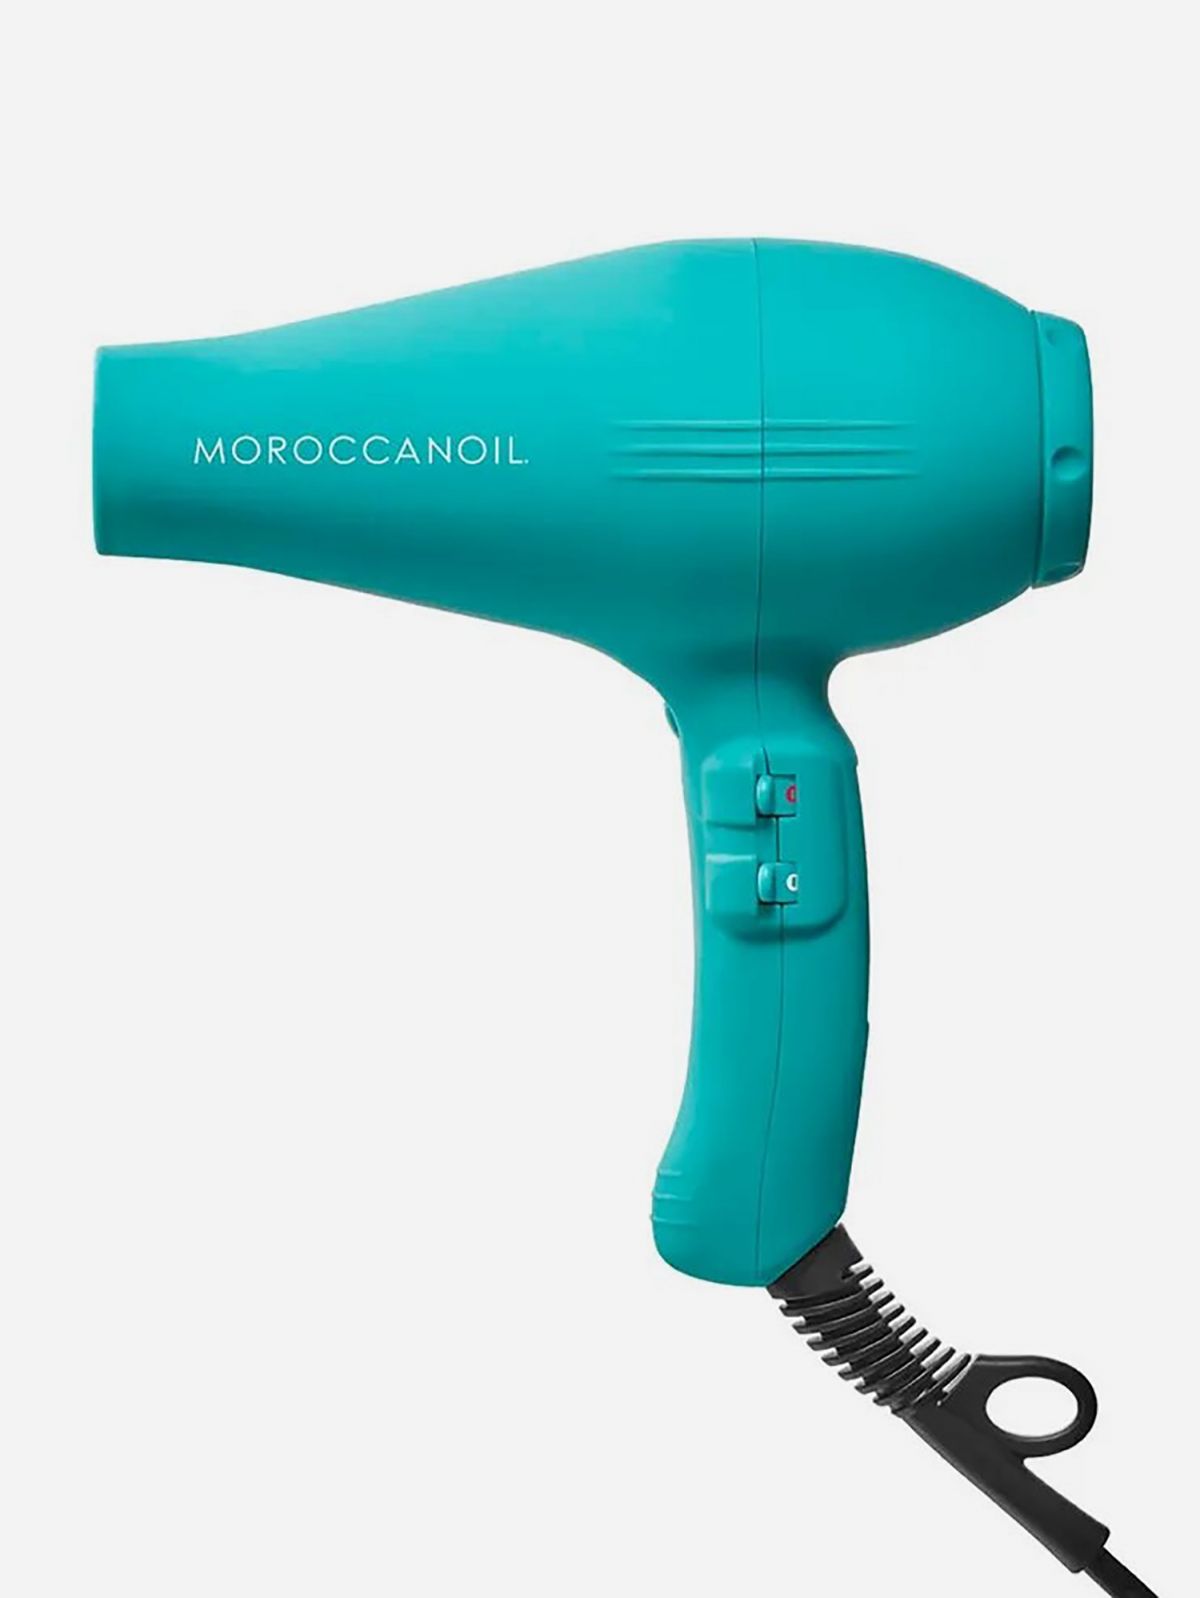  מייבש שיער מקצועי Power performing hair dryer של MOROCCANOIL